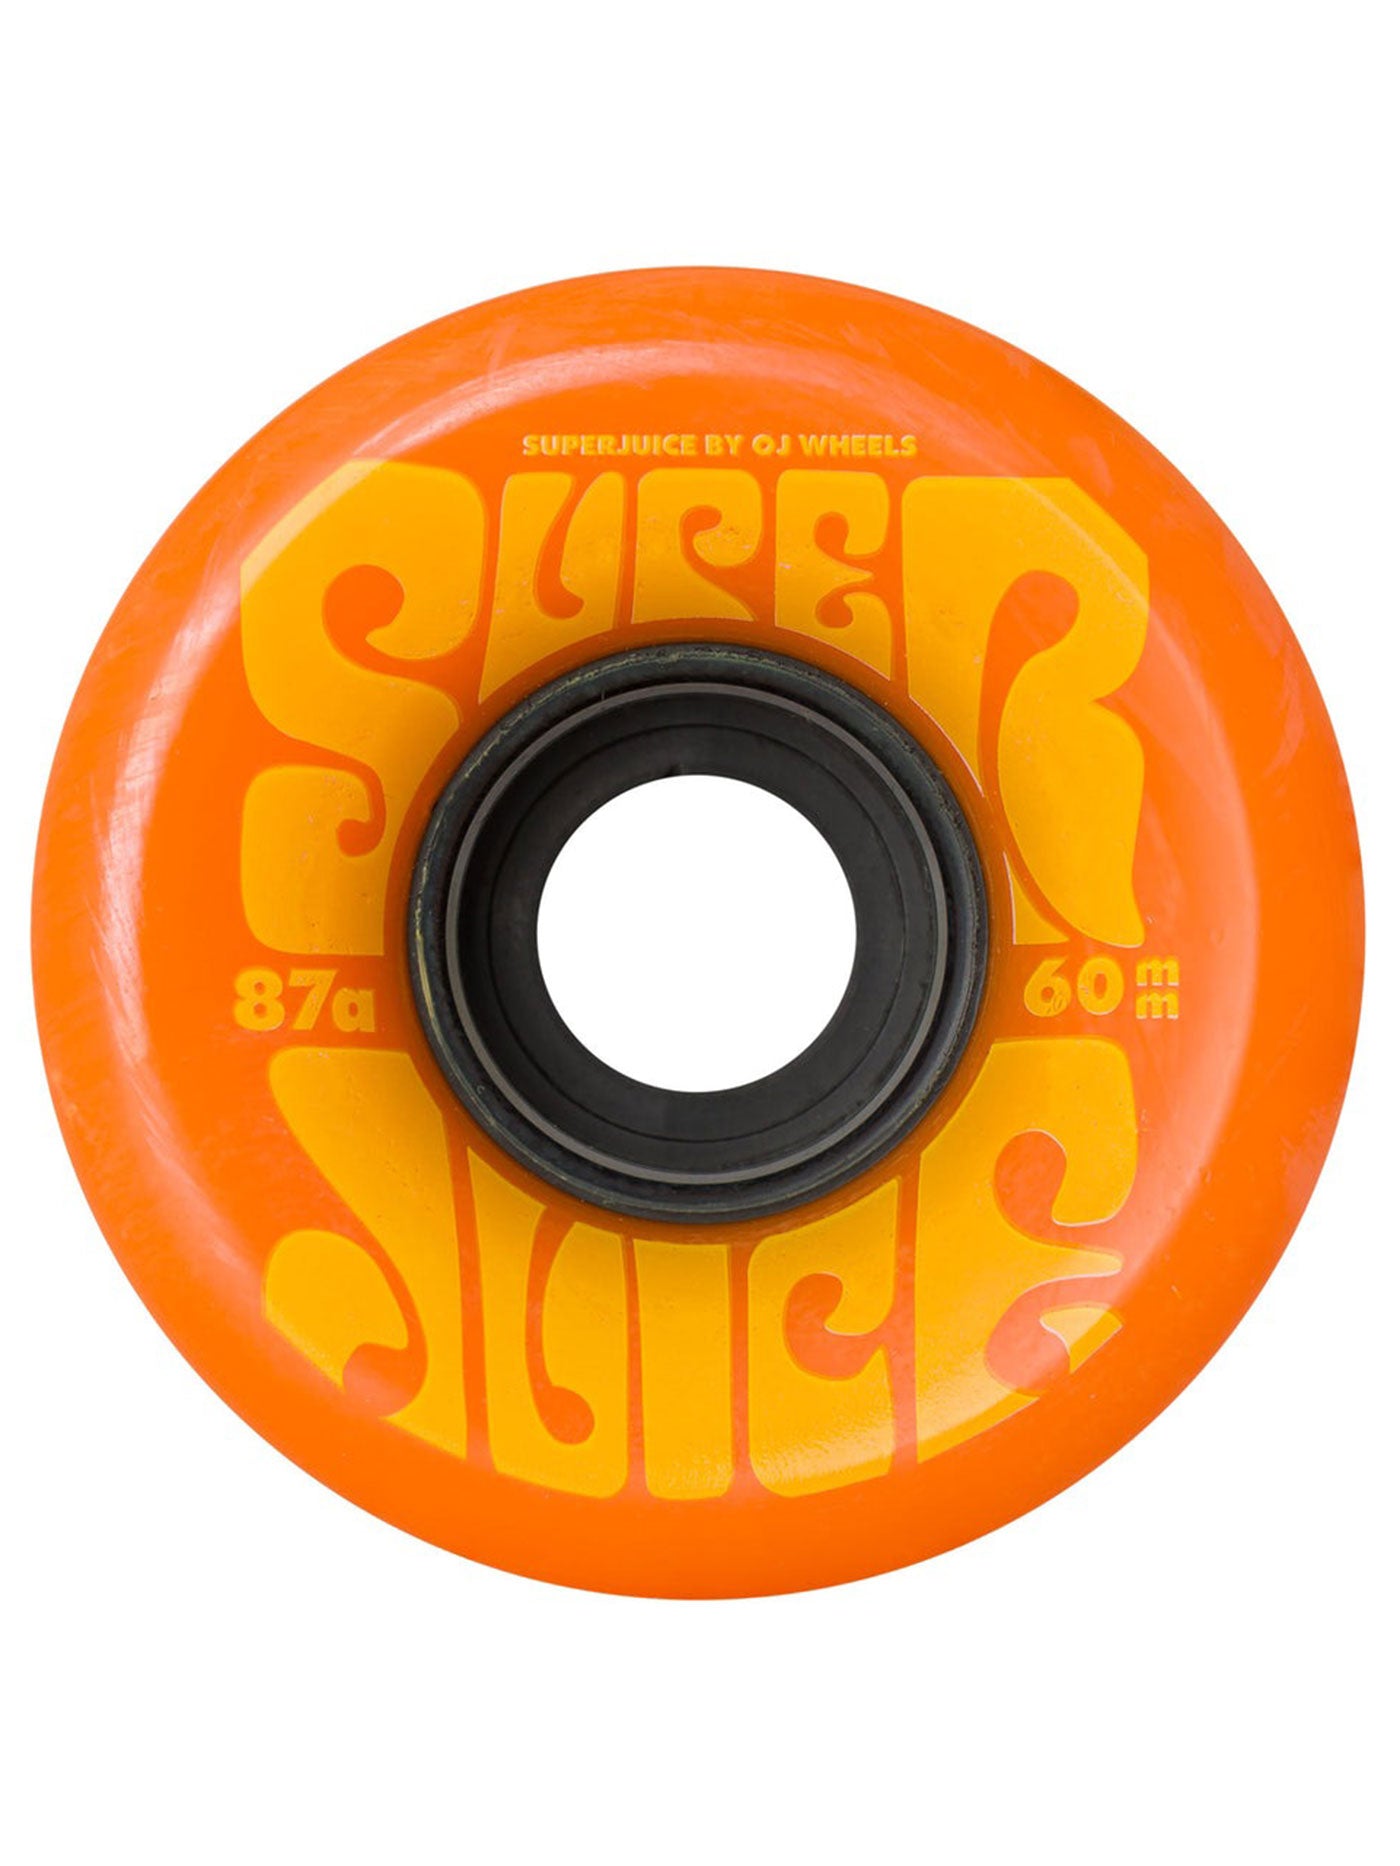 OJ Wheels Super Juice Orange Yellow Skateboard Wheels